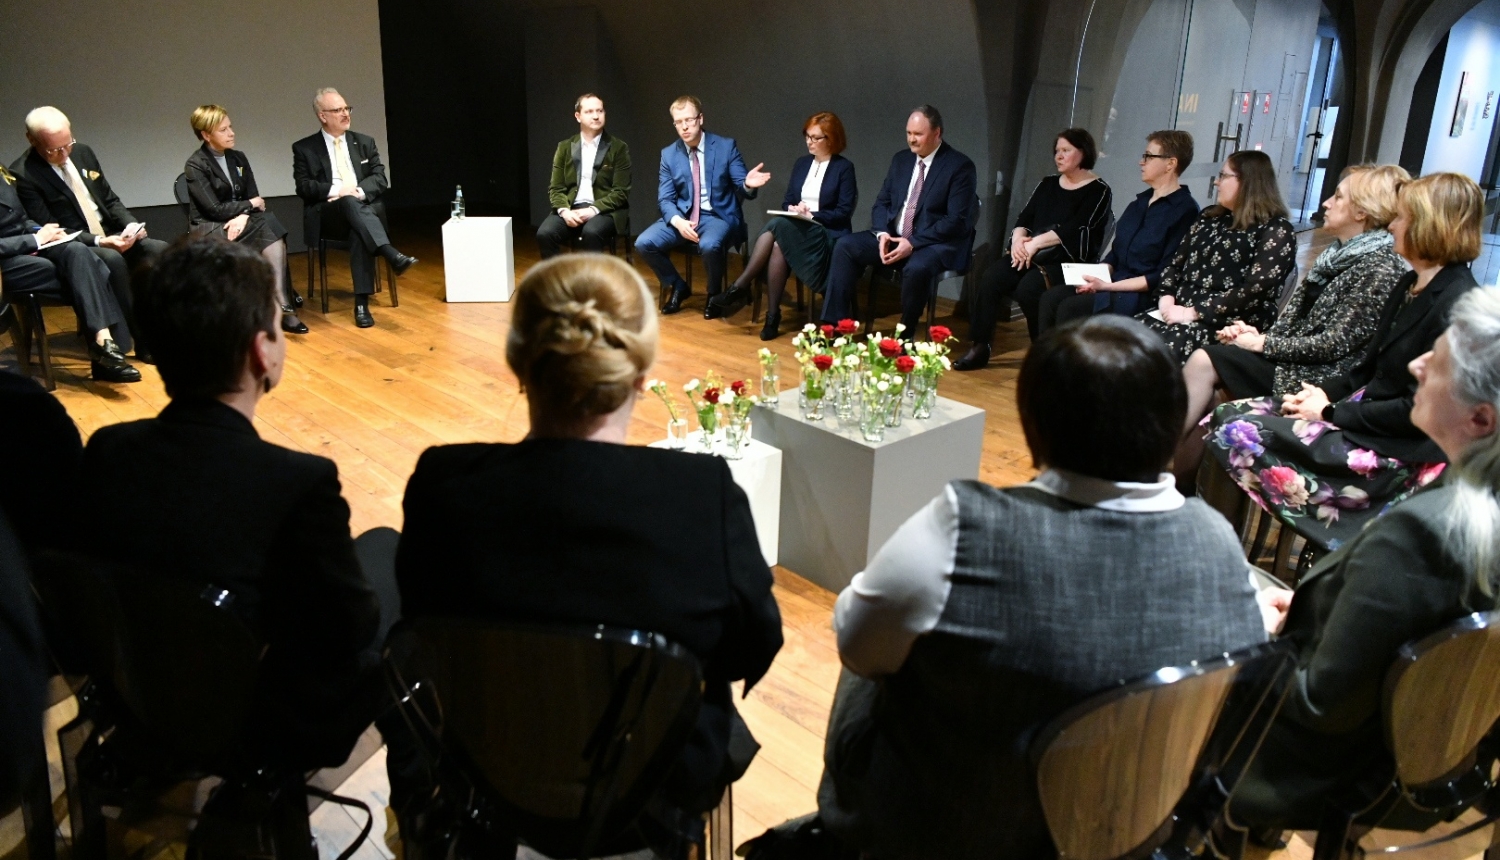 Valsts prezidenta saruna ar Daugavpils kultūras jomas pārstāvjiem, visi sēž aplī